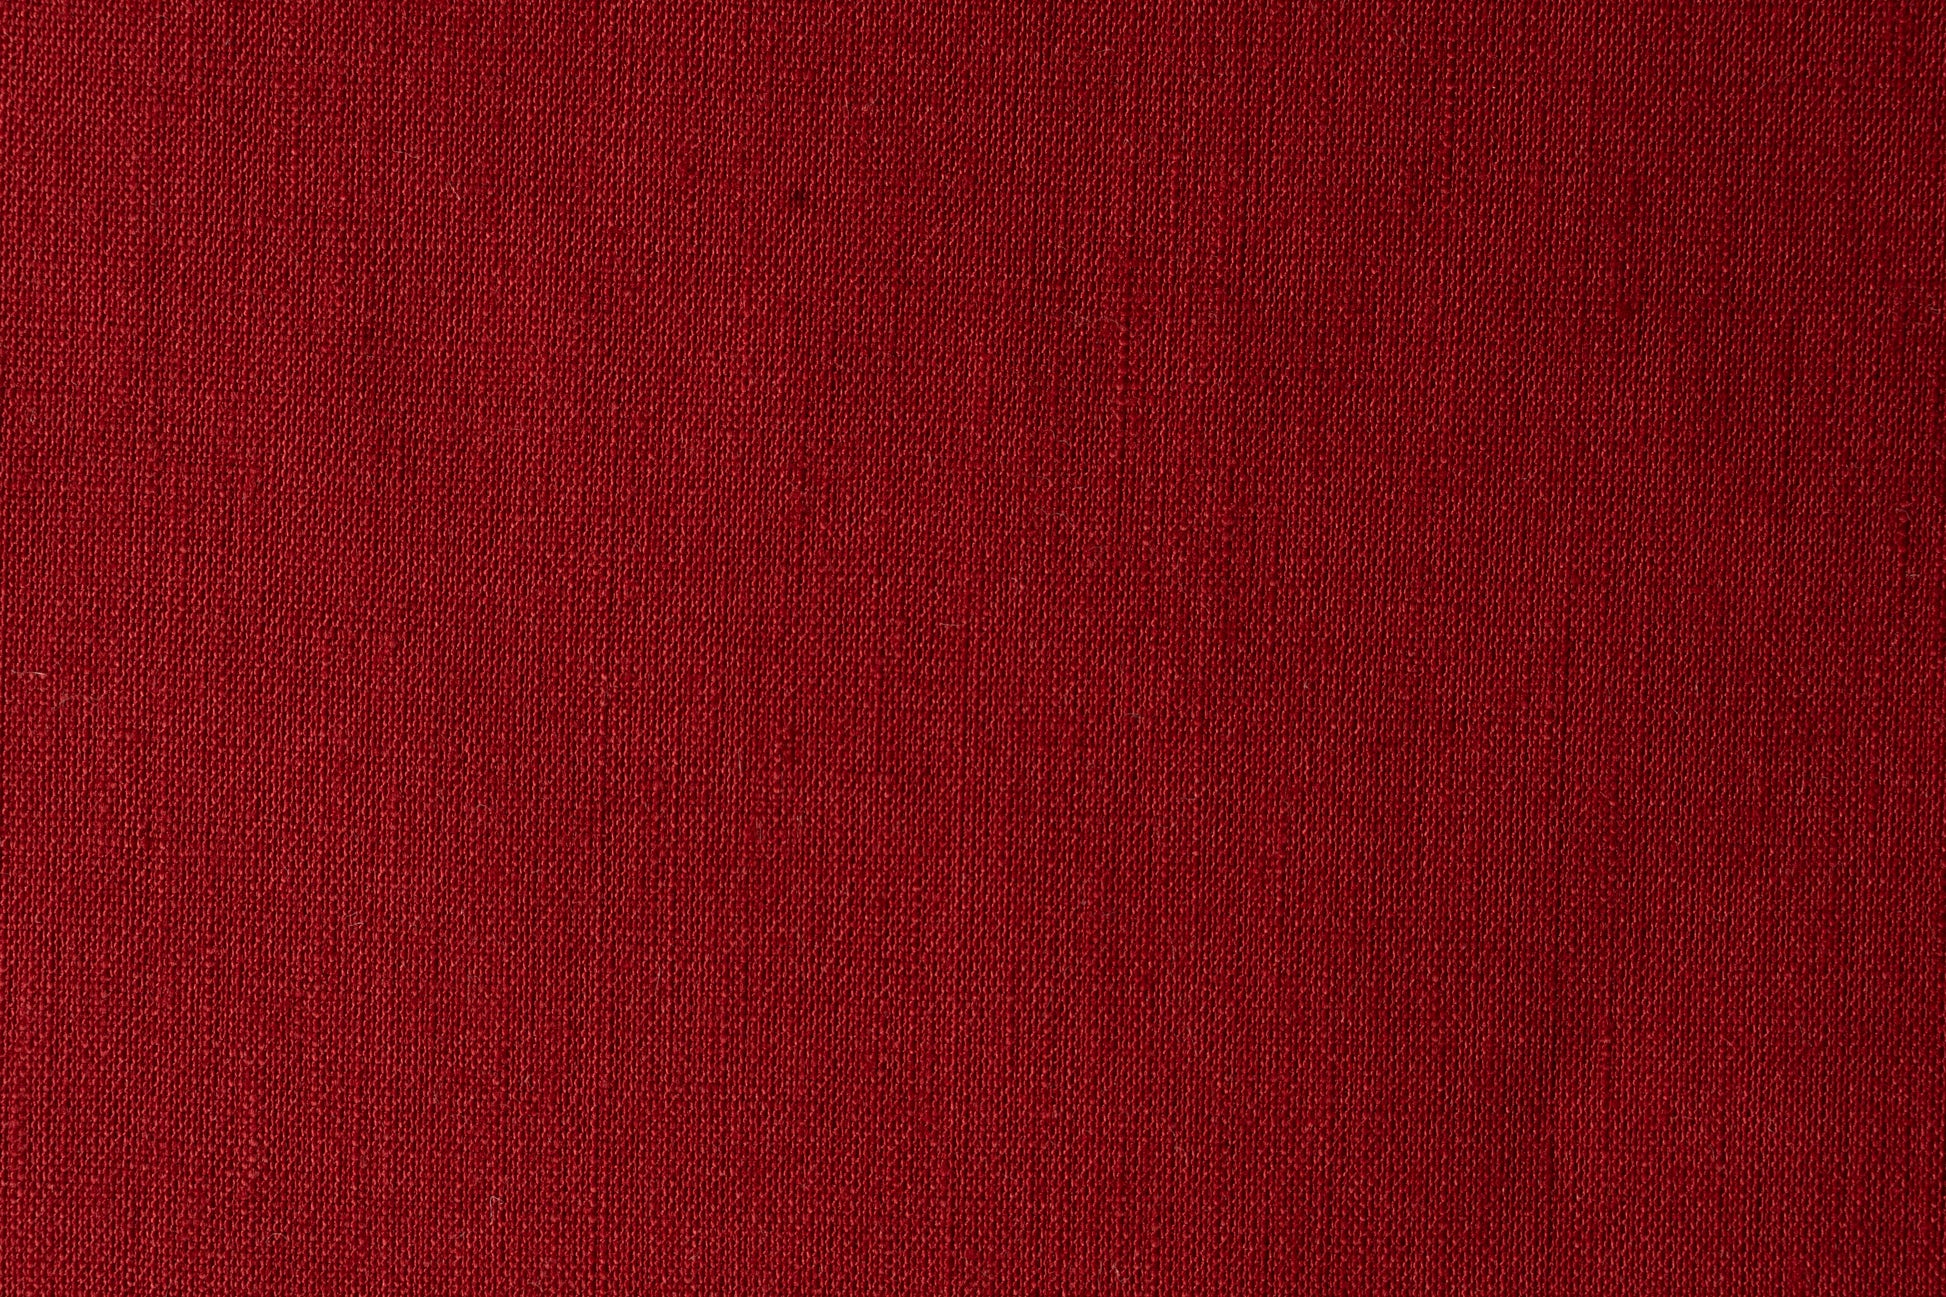 Medium Weight Fabric by the Yard Red (5.5 Oz/Sq Yard) Swatch